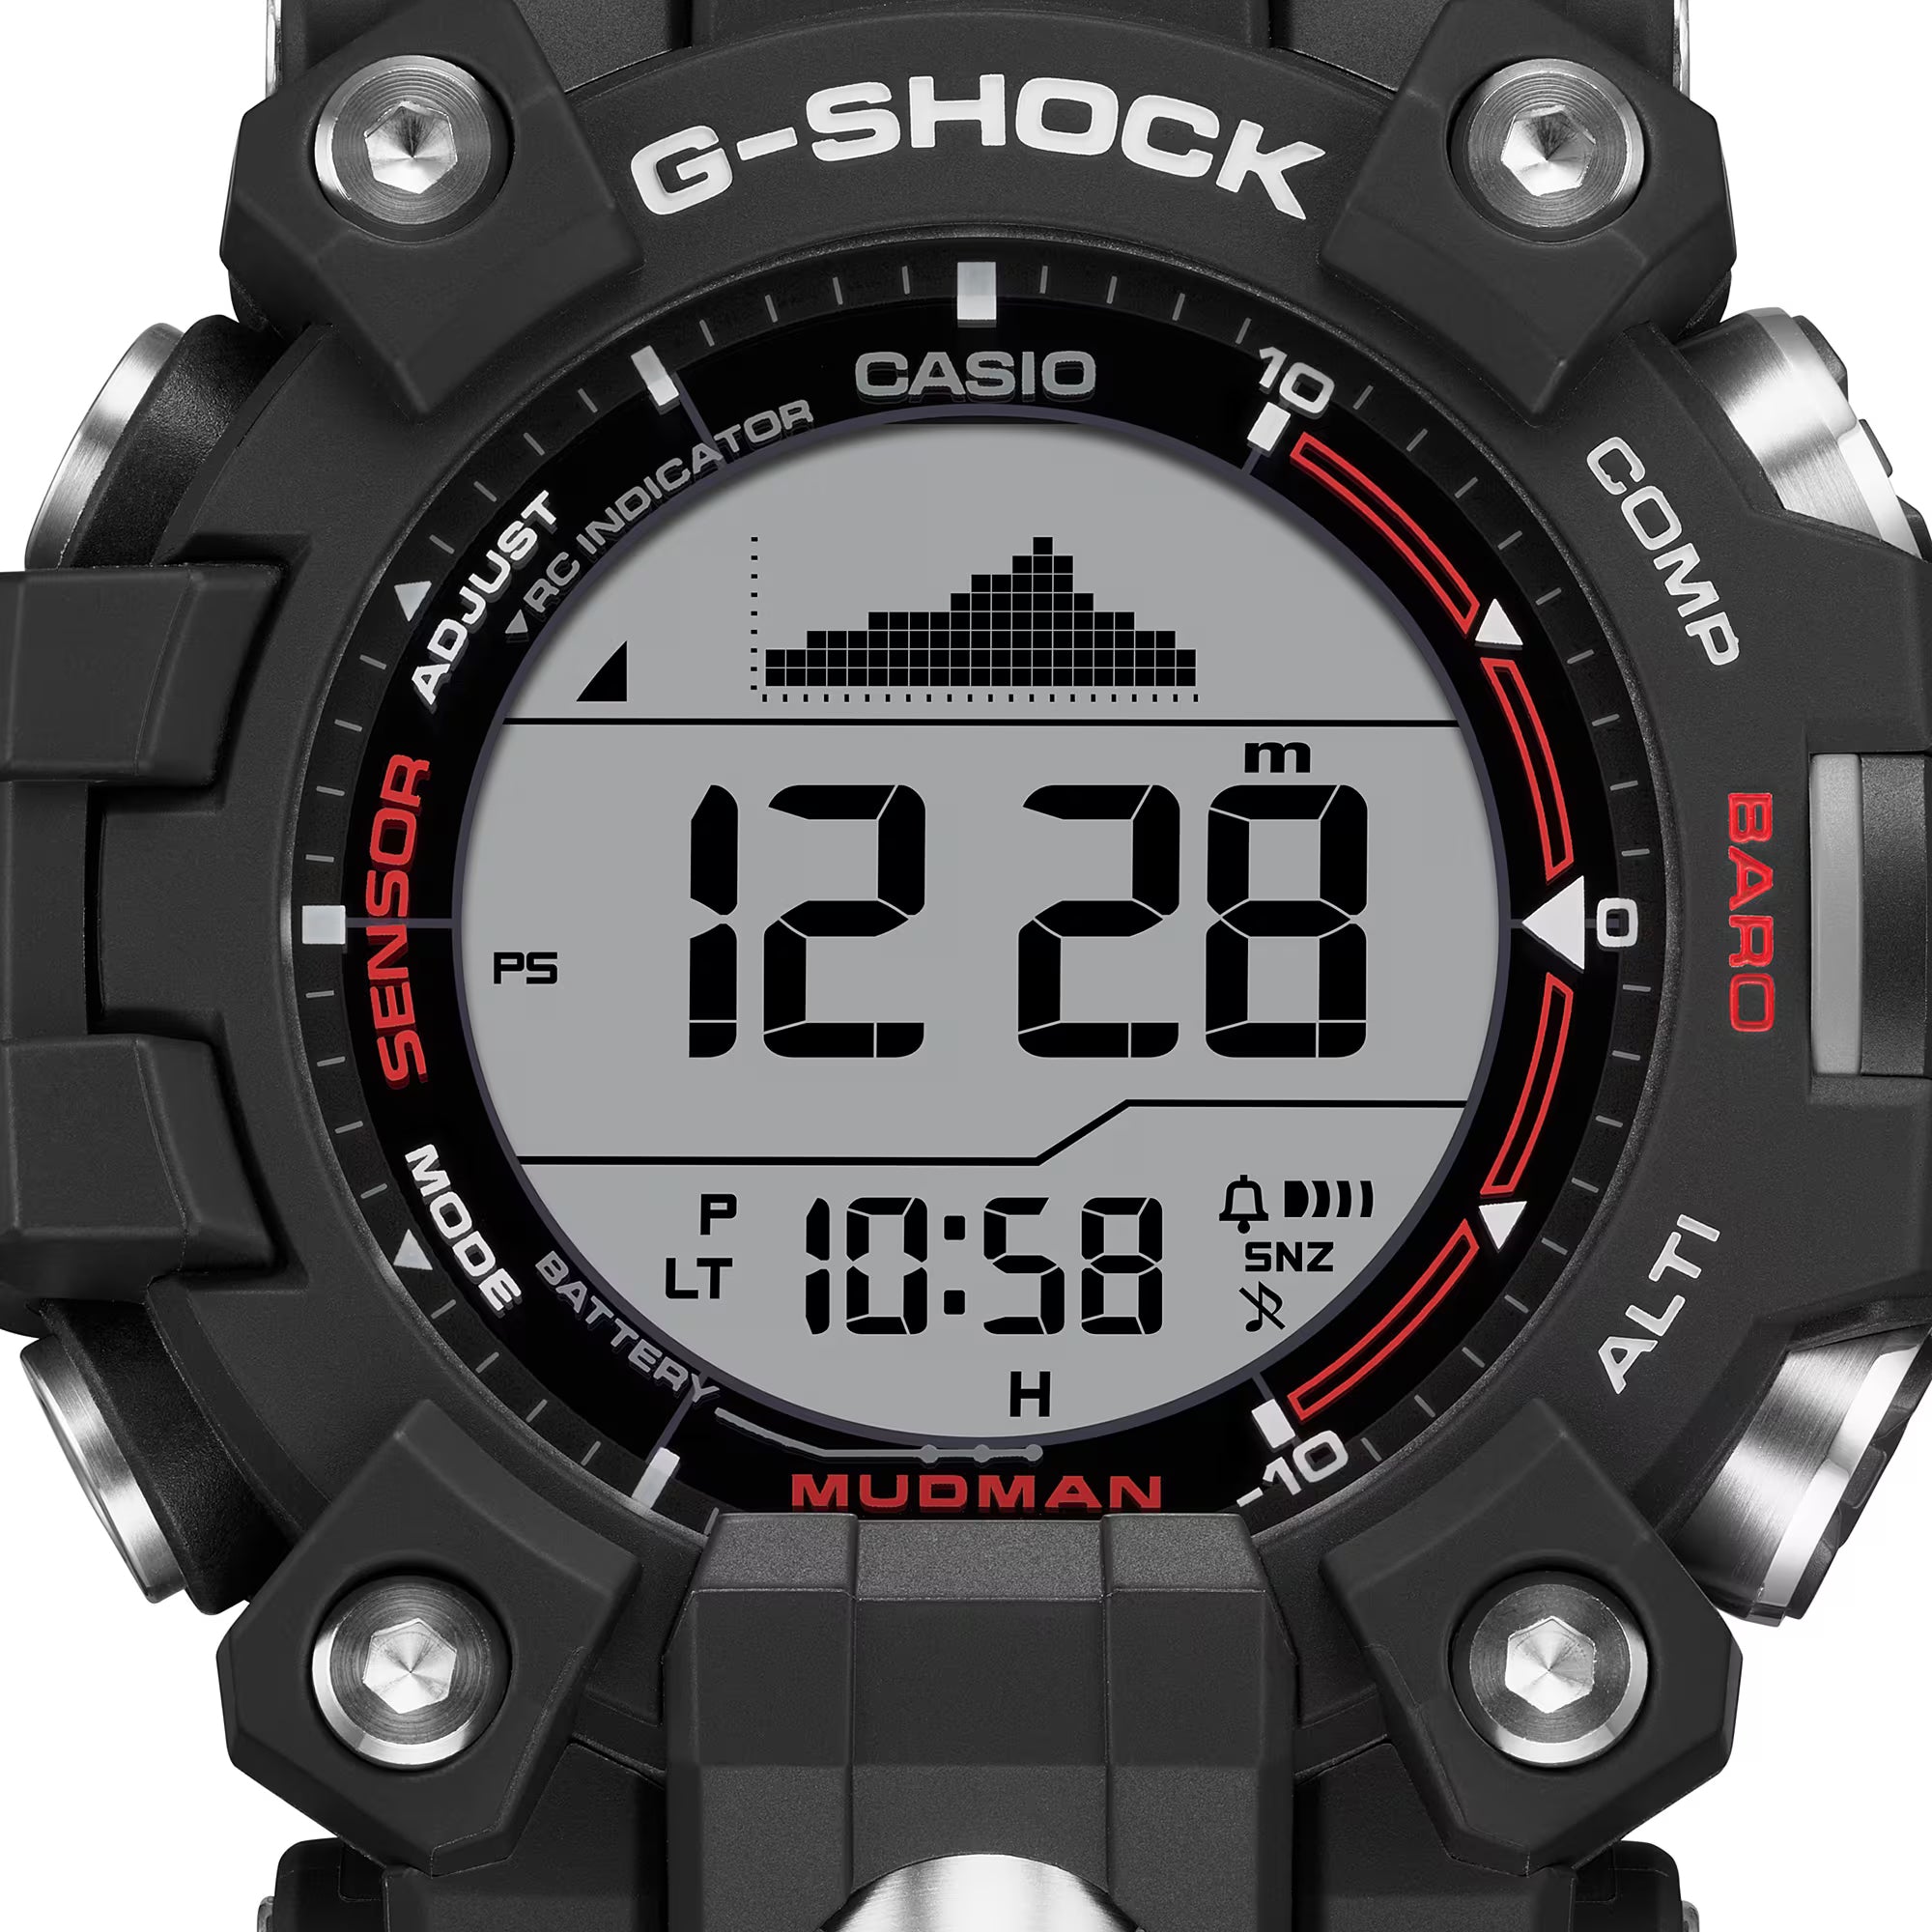 G-Shock Mudmaster GWG-2000 field watch review | Advnture